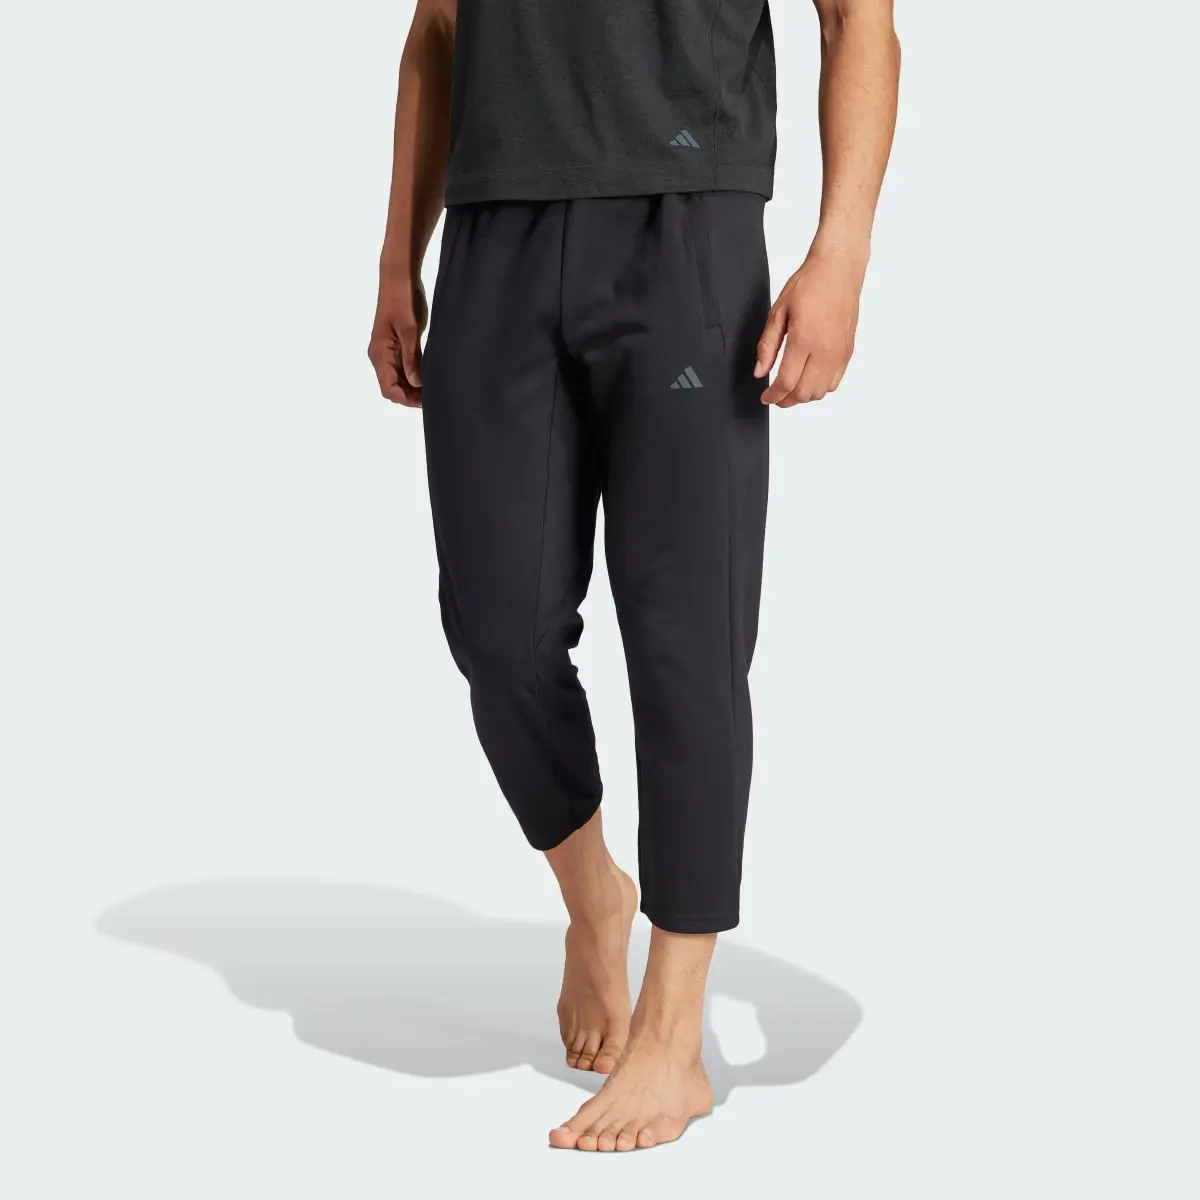 Adidas Spodnie Yoga Training 7/8. 1